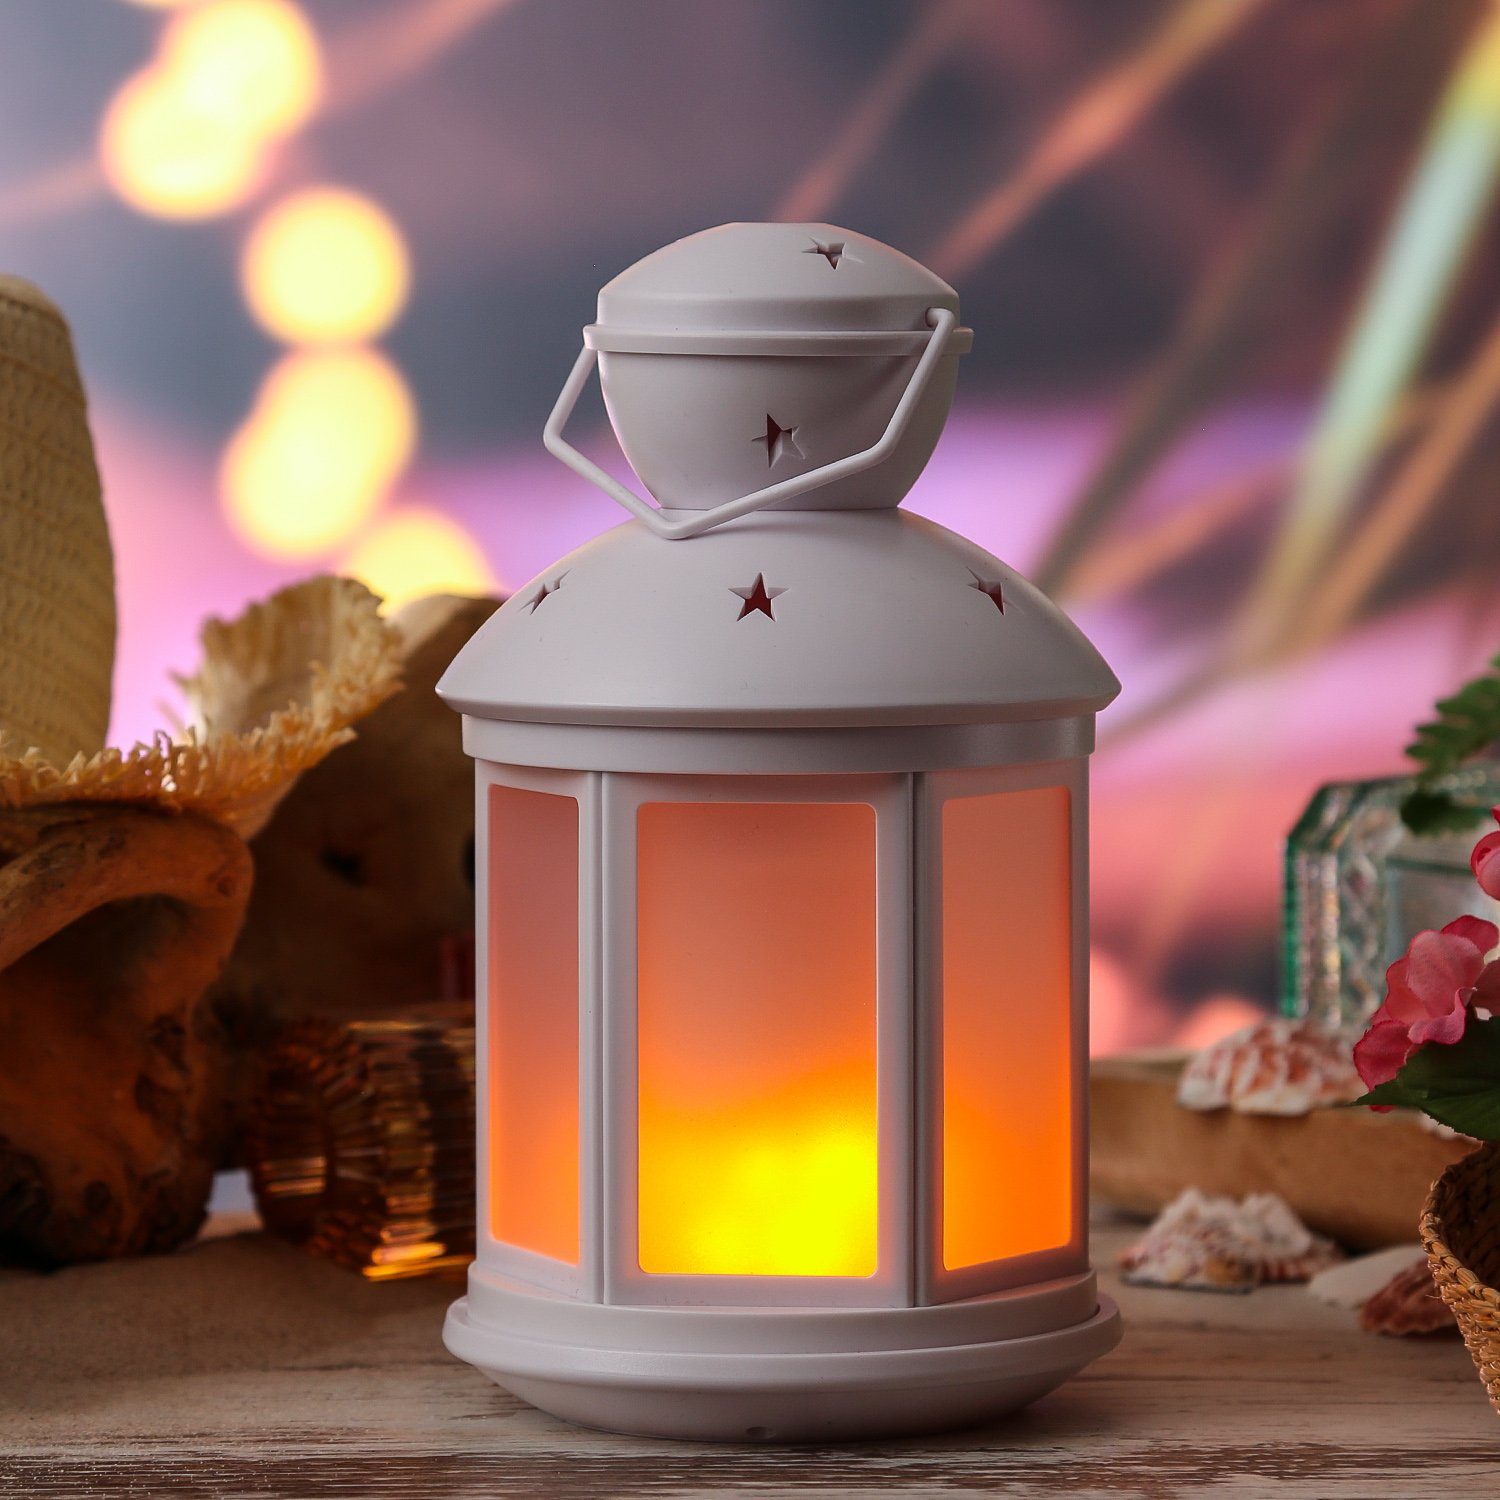 Dekolaterne LED MARELIDA amber LED flackernd 22cm mit Laterne weiß, Classic, LED Laterne Flammeneffekt